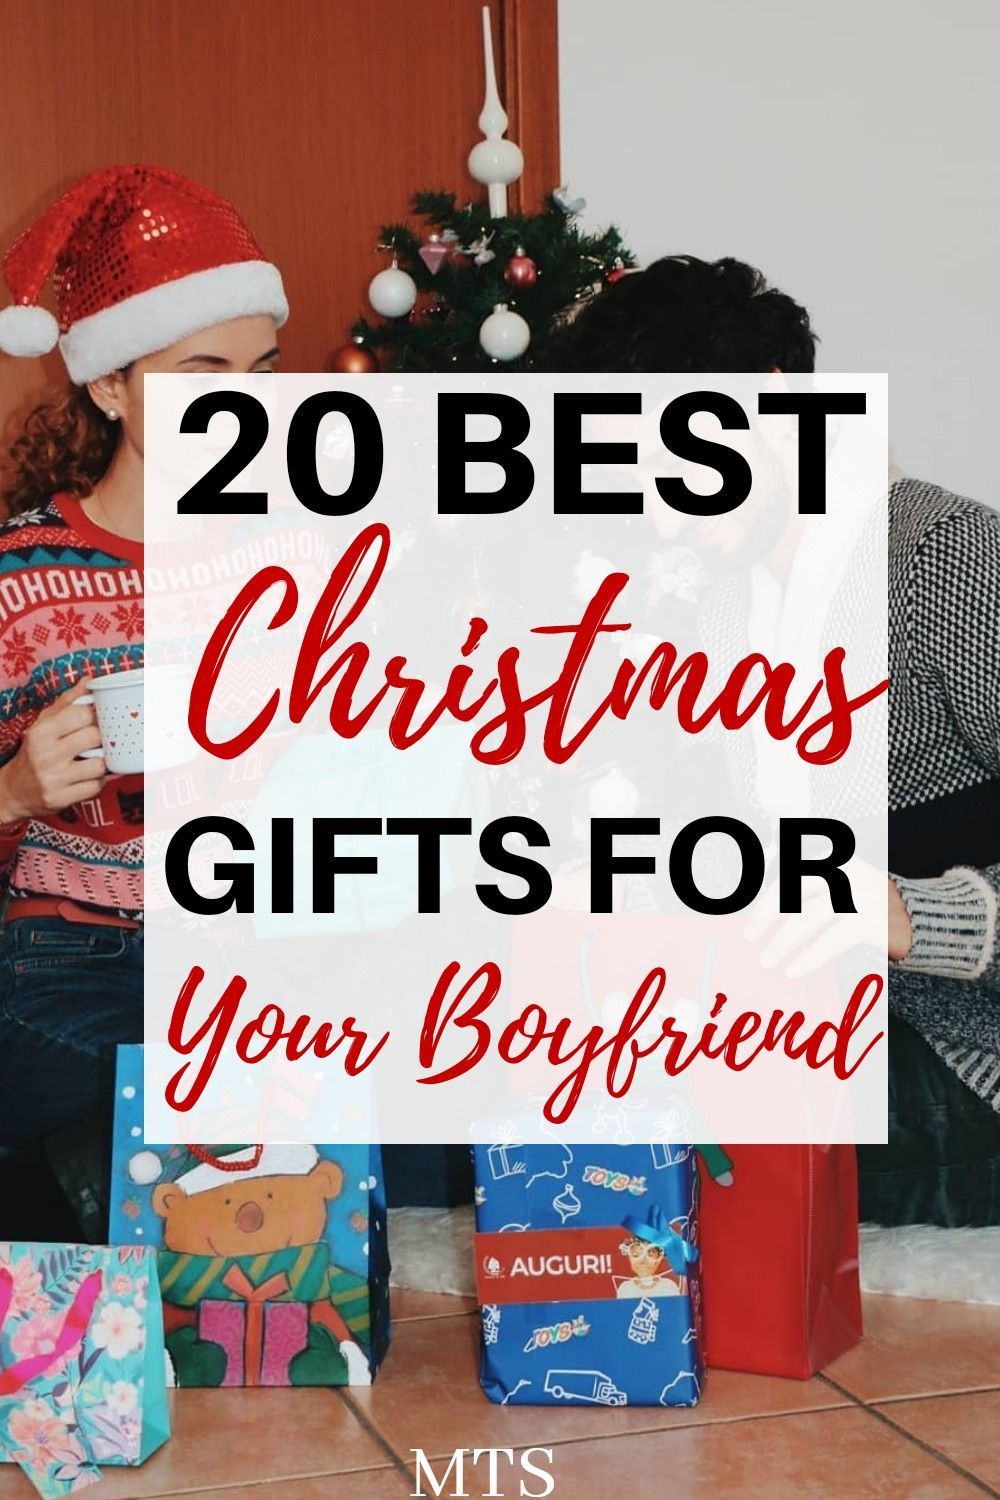 Christmas Present Ideas For Boyfriend - Christmas Present Ideas For Boyfriend -   18 xmas gifts for boyfriend diy ideas